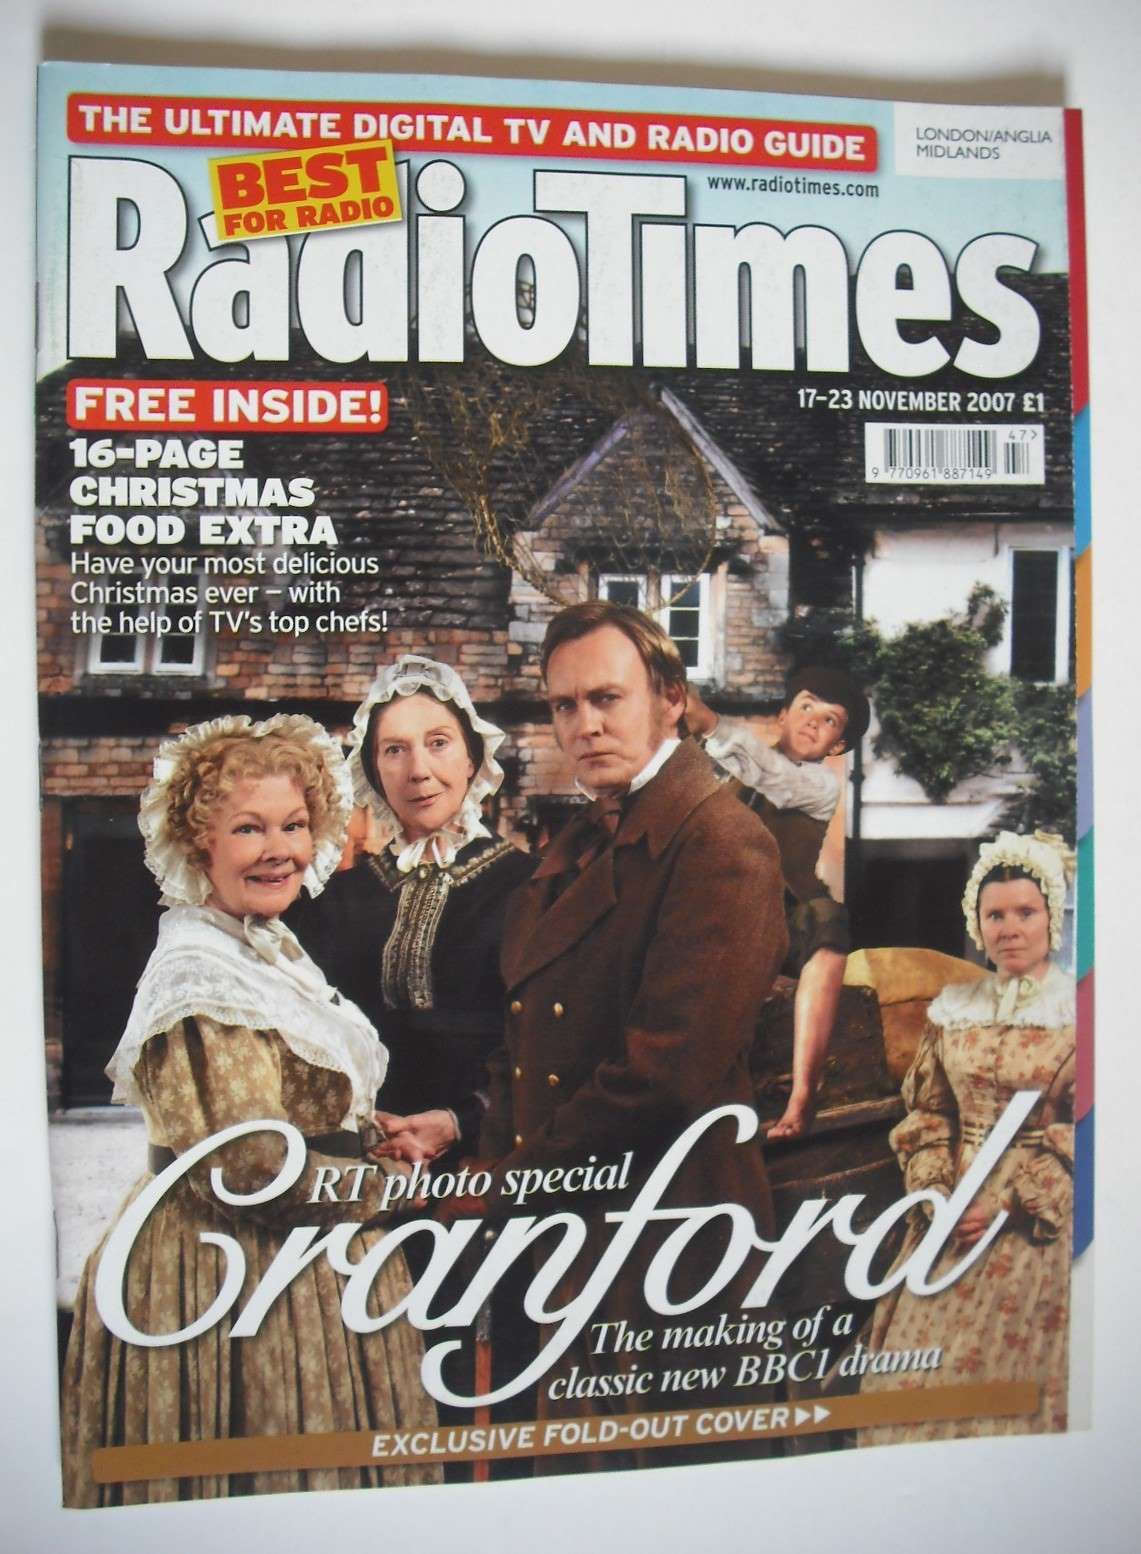 <!--2007-11-17-->Radio Times magazine - Cranford cover (17-23 November 2007